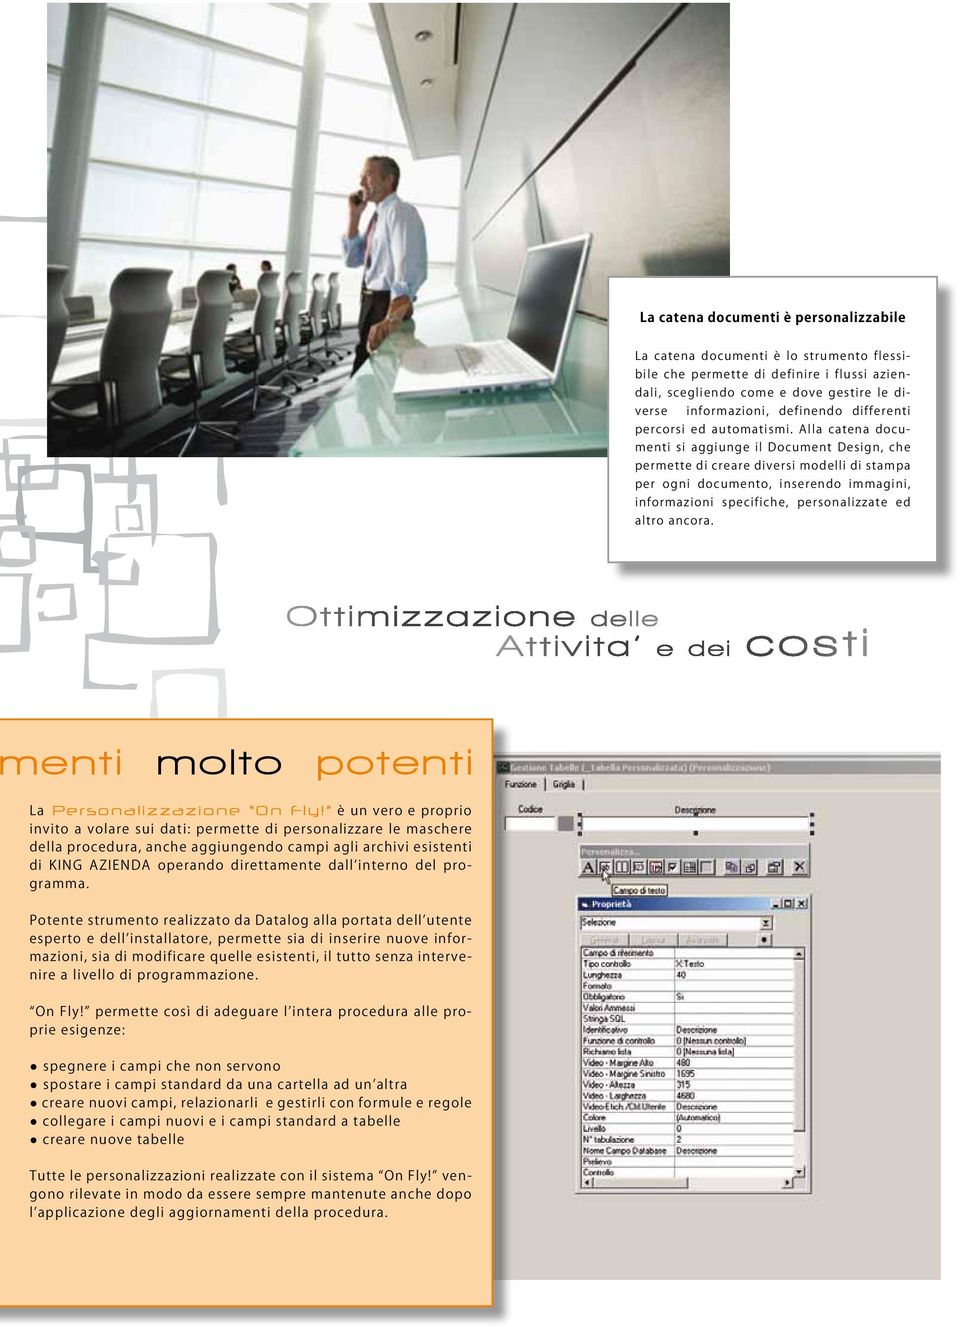 Alla catena documenti si aggiunge il Document Design, che permette di creare diversi modelli di stampa per ogni documento, inserendo immagini, informazioni specifiche, personalizzate ed altro ancora.